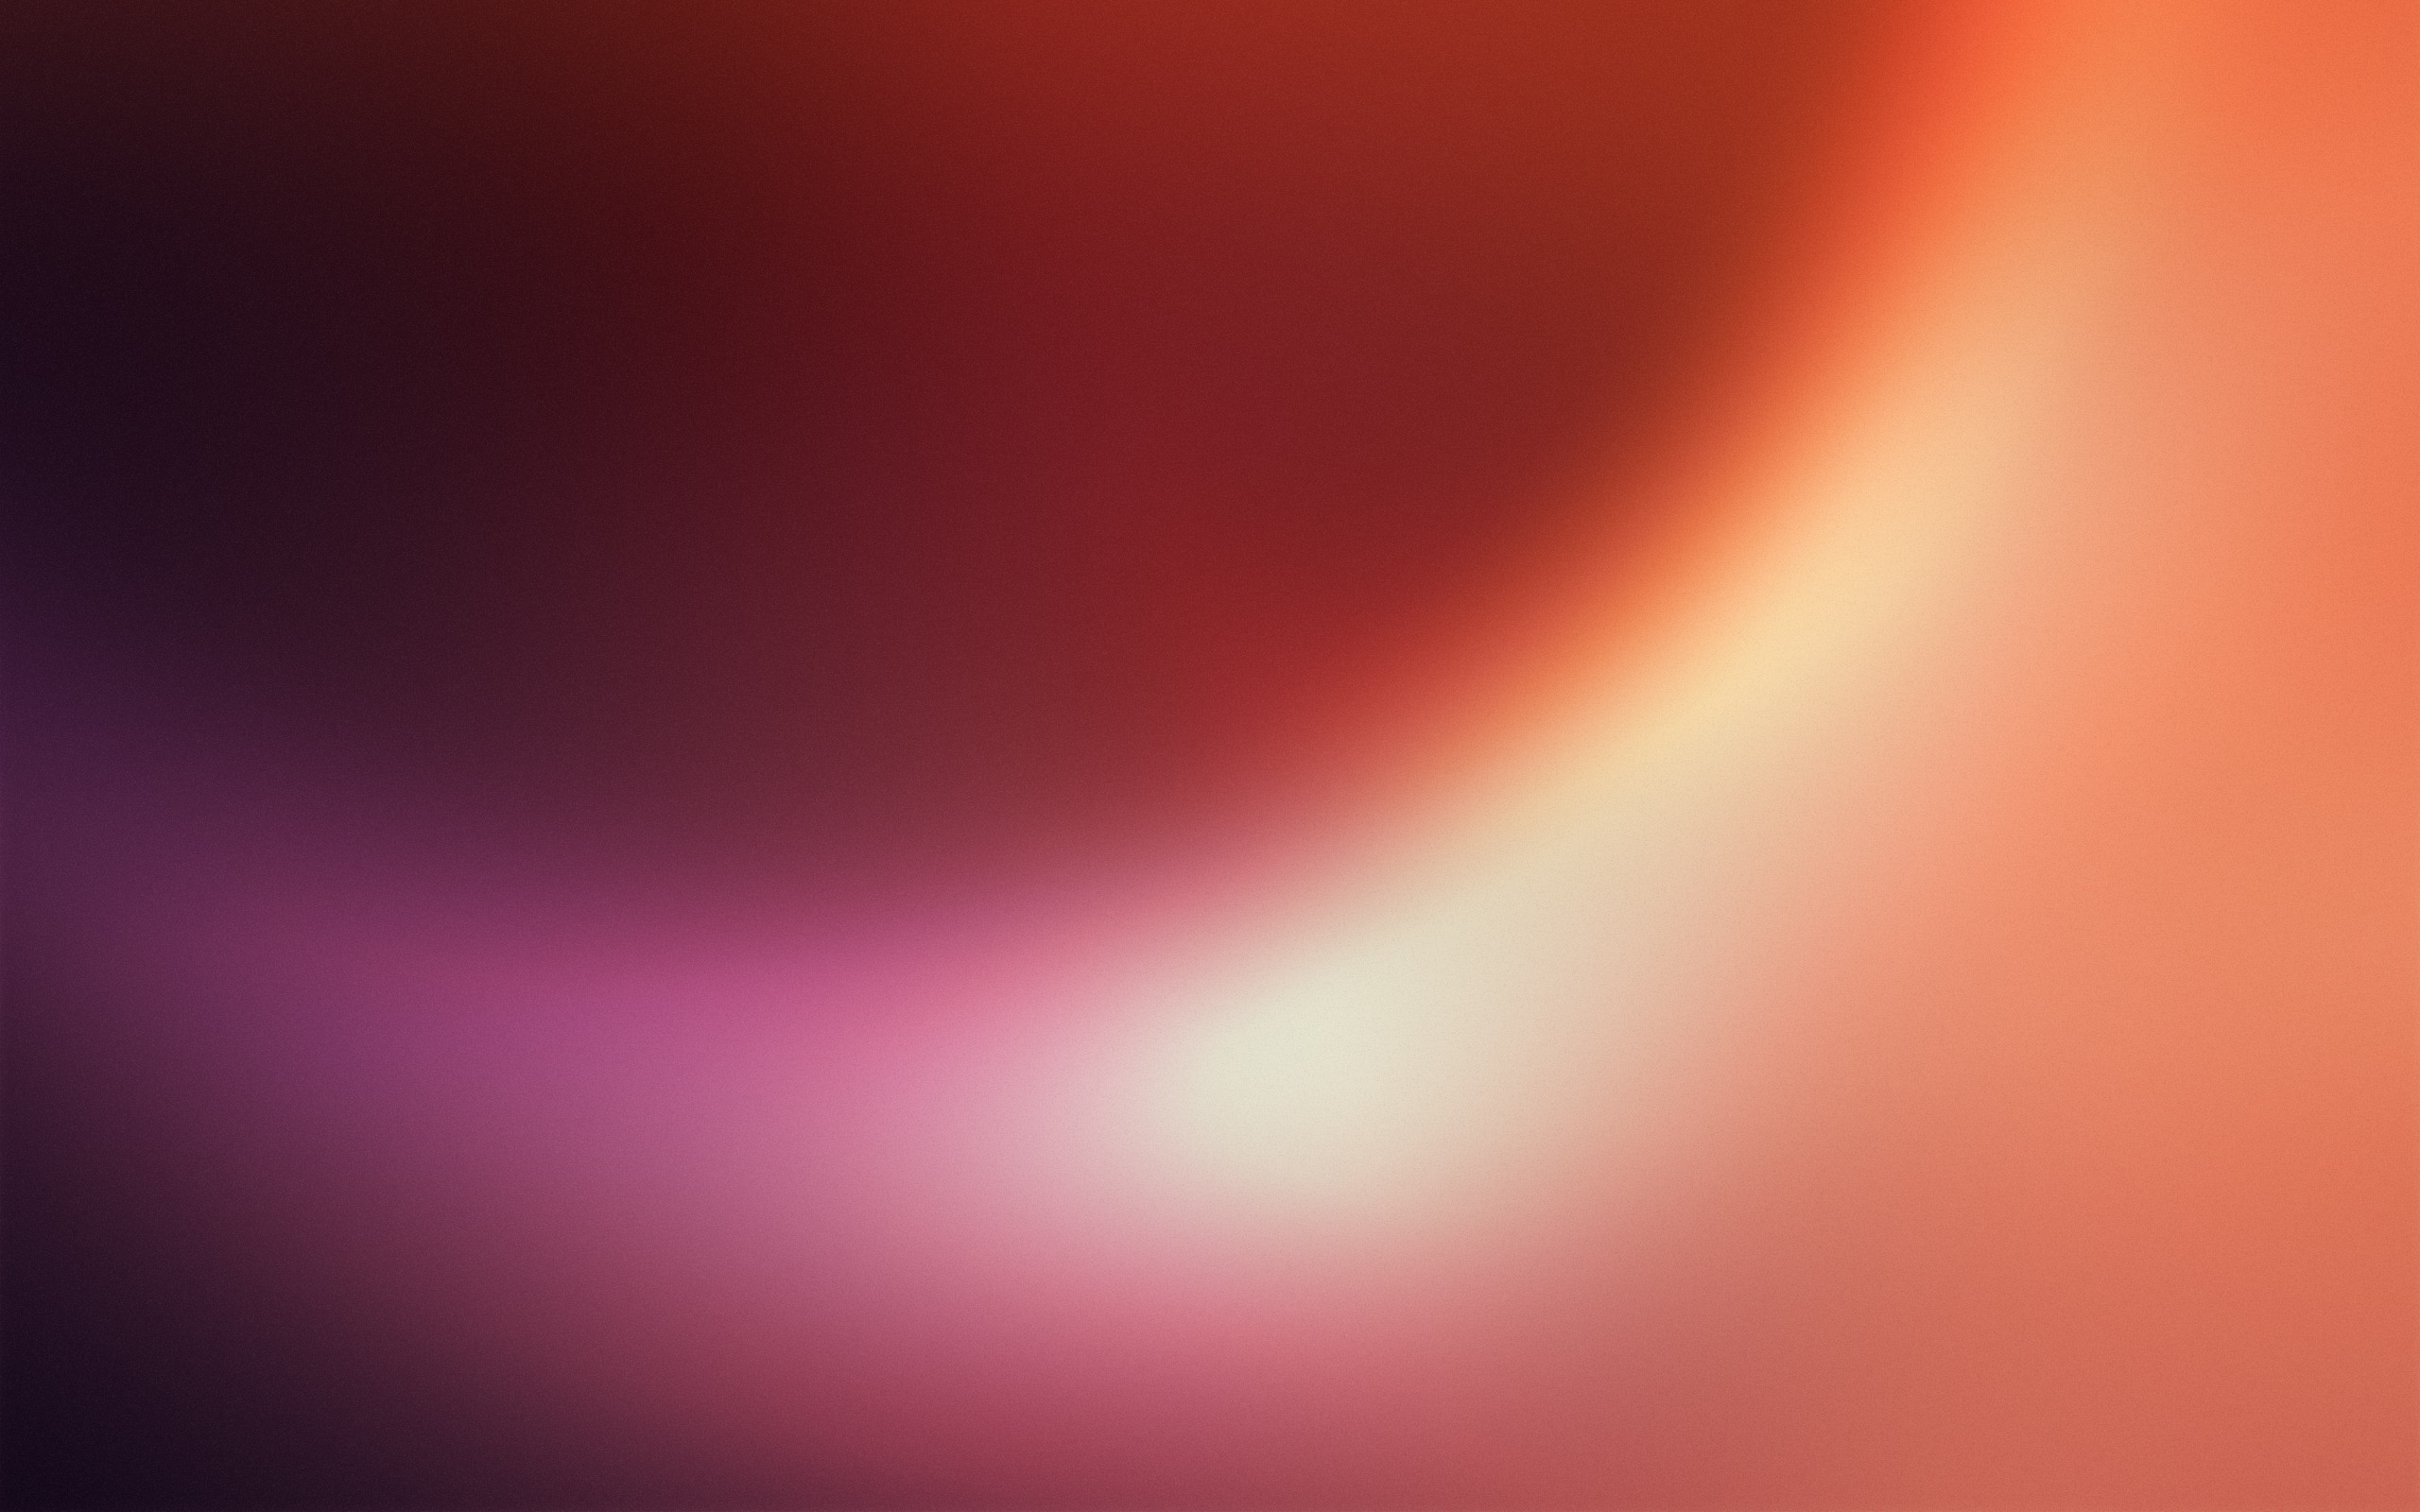 ubuntu wallpaper,red,sky,orange,light,pink